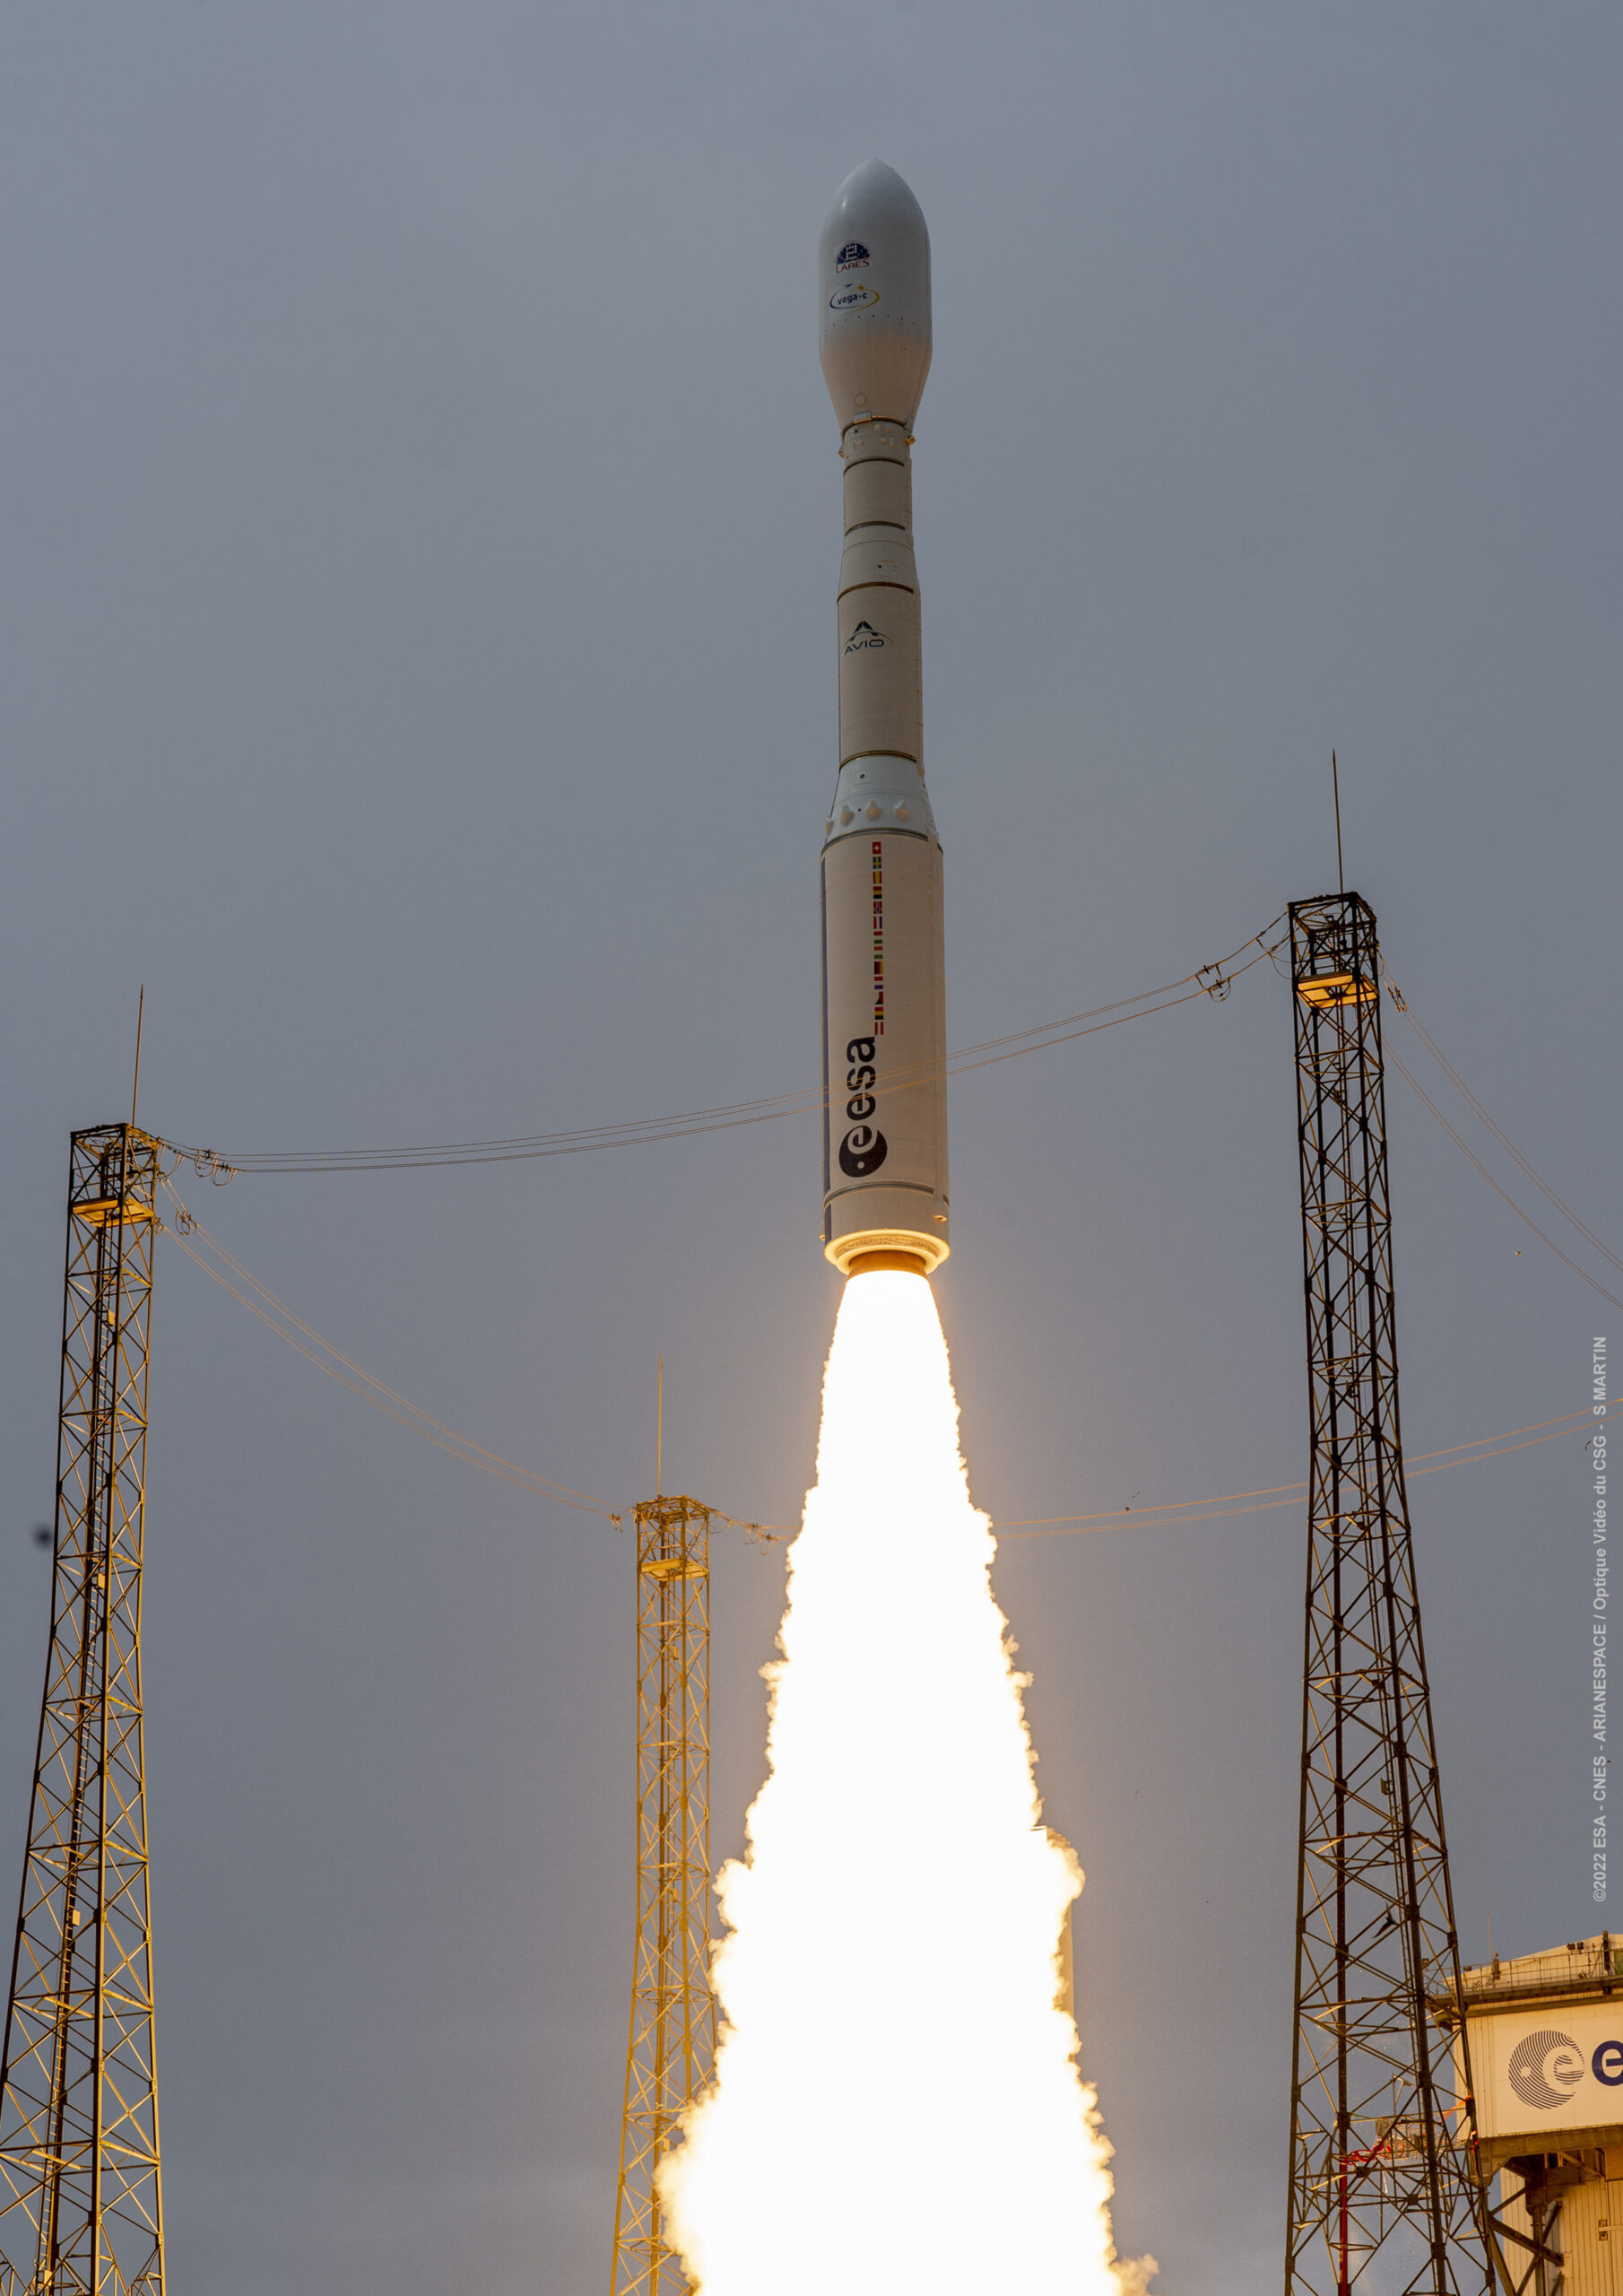 當地時間 15:13 ，歐洲太空總署新的 Vega-C 火箭從蓋亞那太空中心發射升空，開始它的首飛。憑藉著全新的第一級和第二級以及升級後的第四級， Vega-C 在離地 700 公里的圓形繞極軌道的酬載能力已經從其前身 Vega 的 1.5 噸提高到約 2.3 噸。 VV21 航班中， Vega-C 的有效載荷是義大利太空總署的一項科學任務 LARES-2 以及來自法國、義大利和斯洛維尼亞的六顆科研立方衛星。